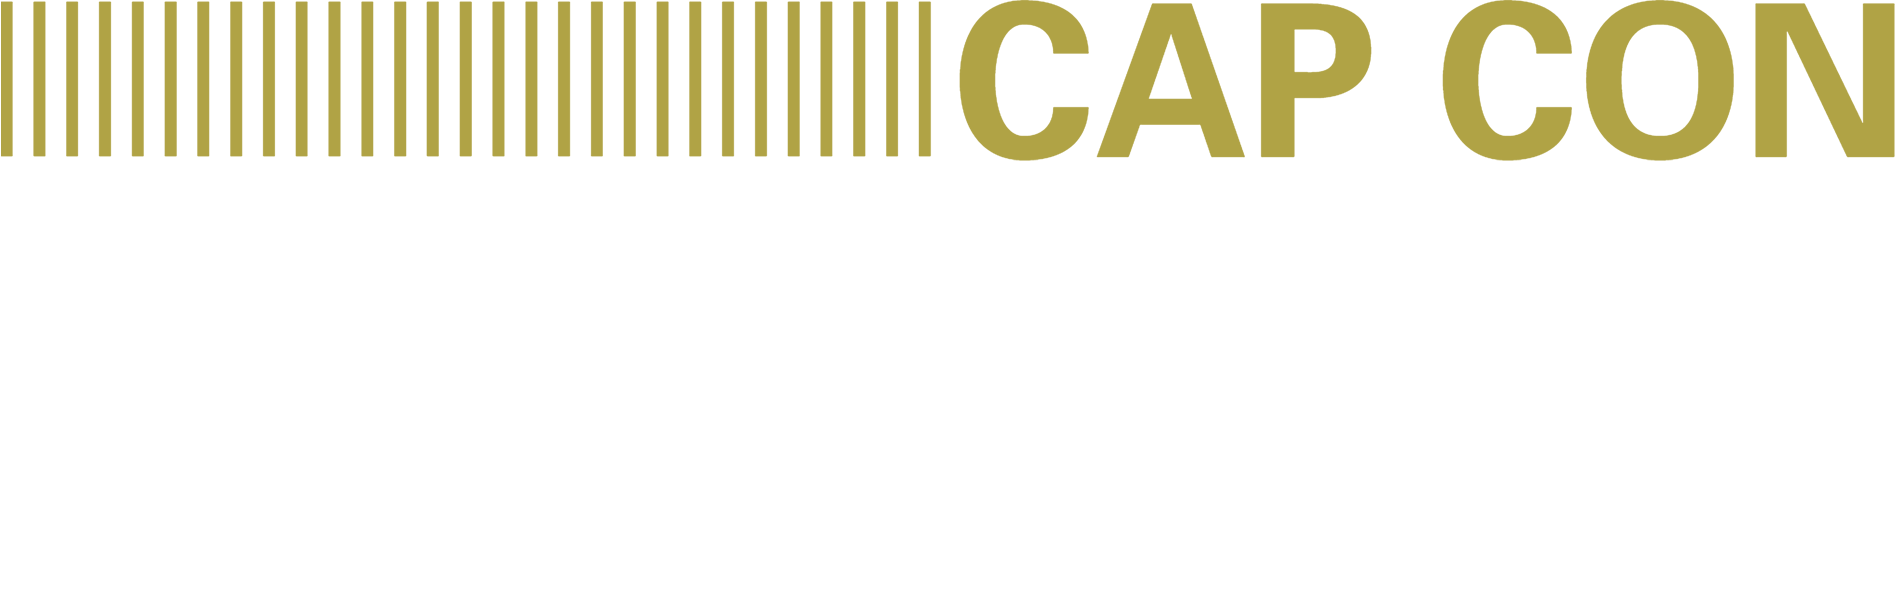 Cap Con Logo